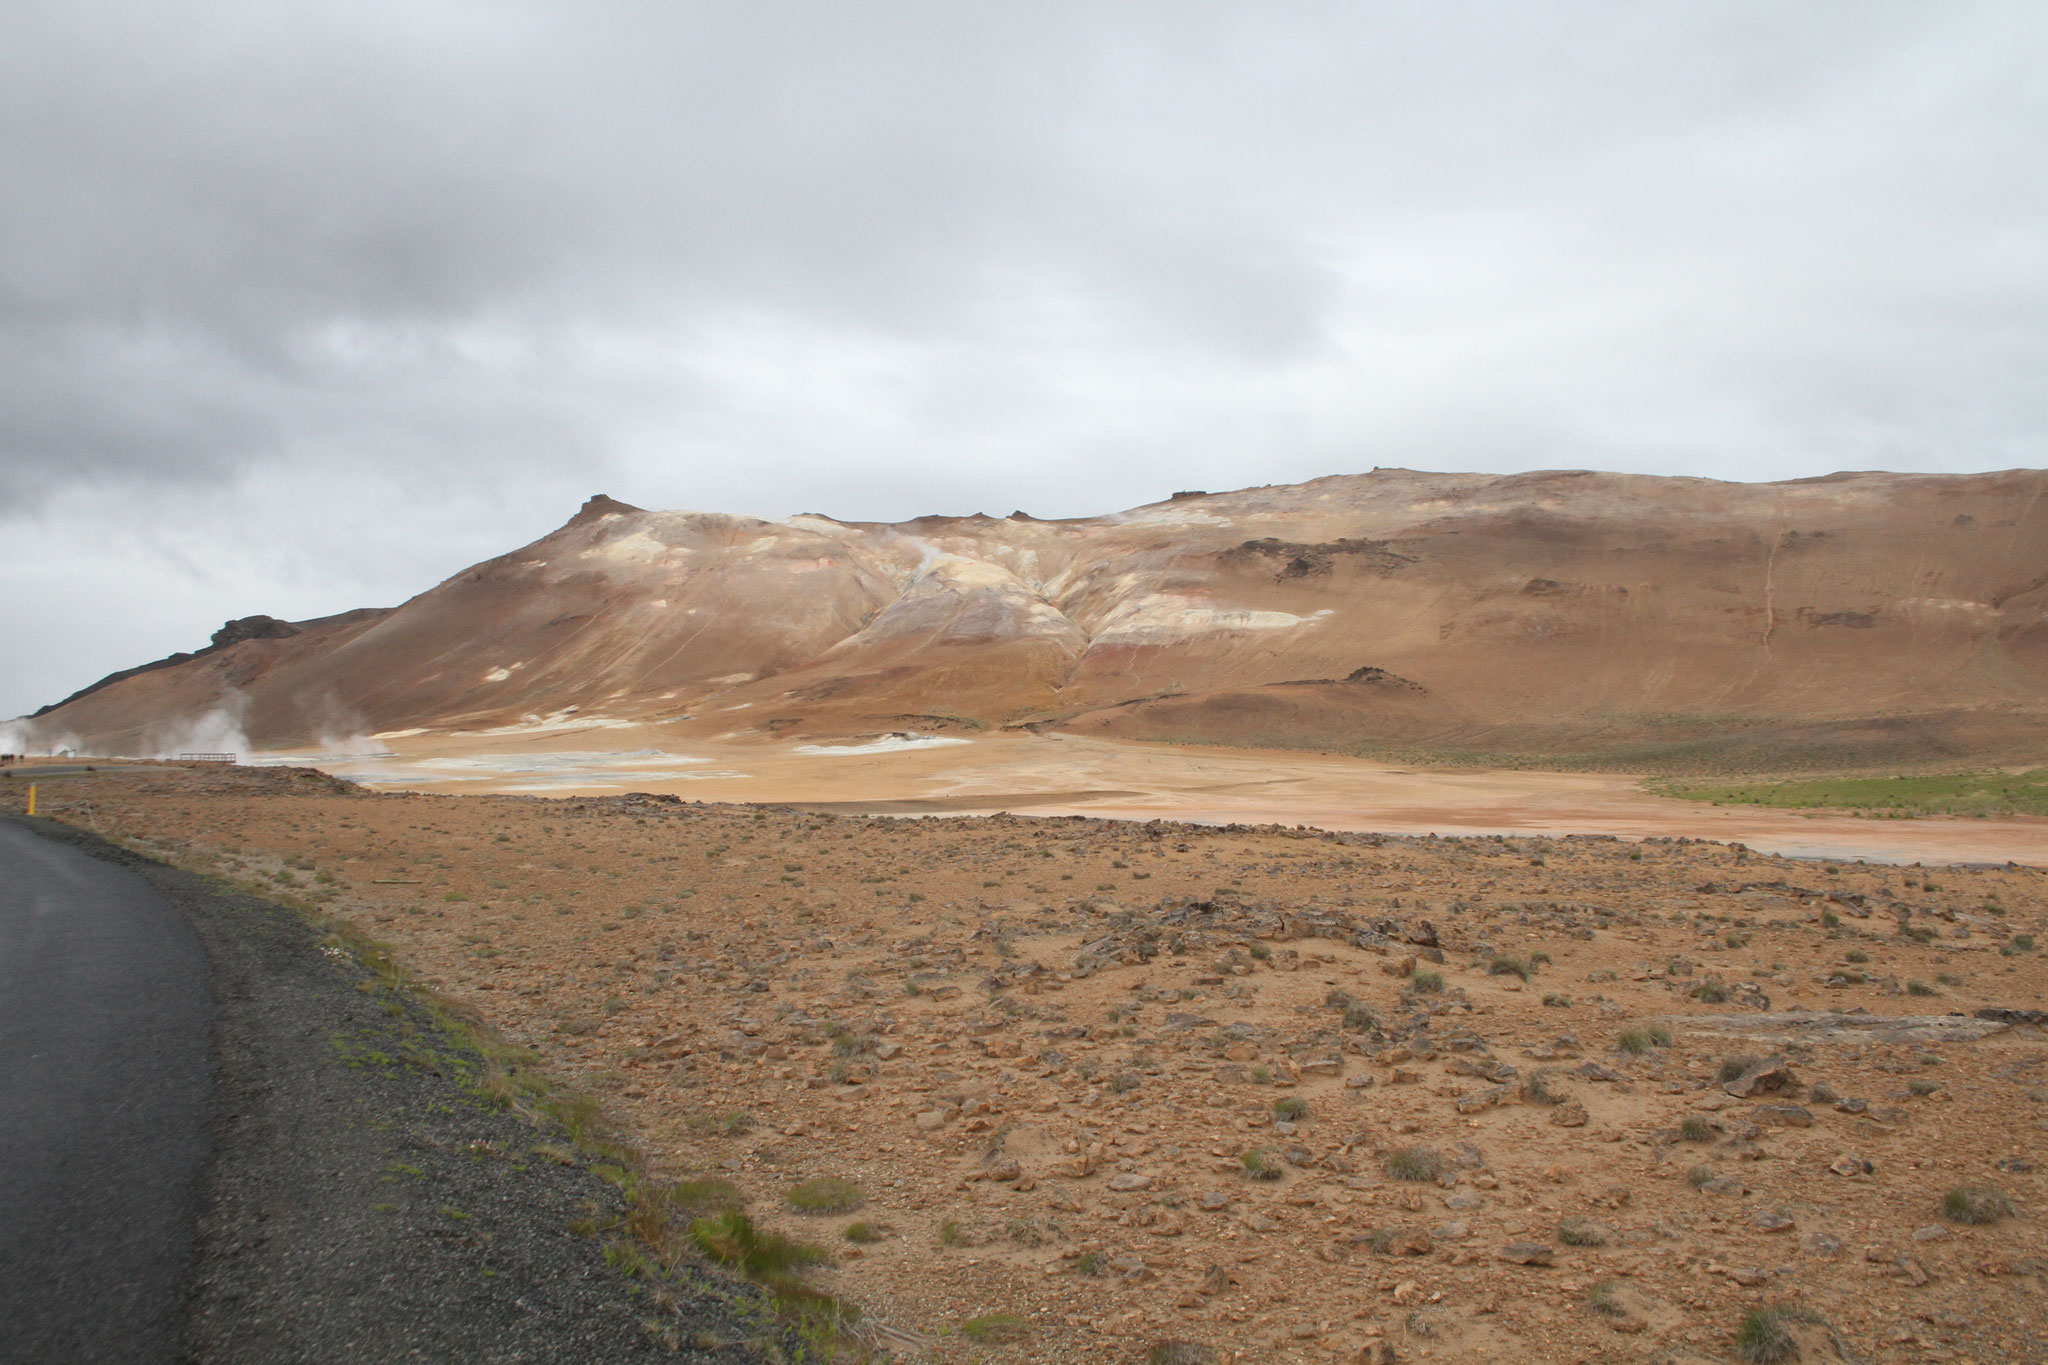 Zum Schluss noch einige landschaftliche Impressionen: Island ist mancherorts vulkanisch geprägt.